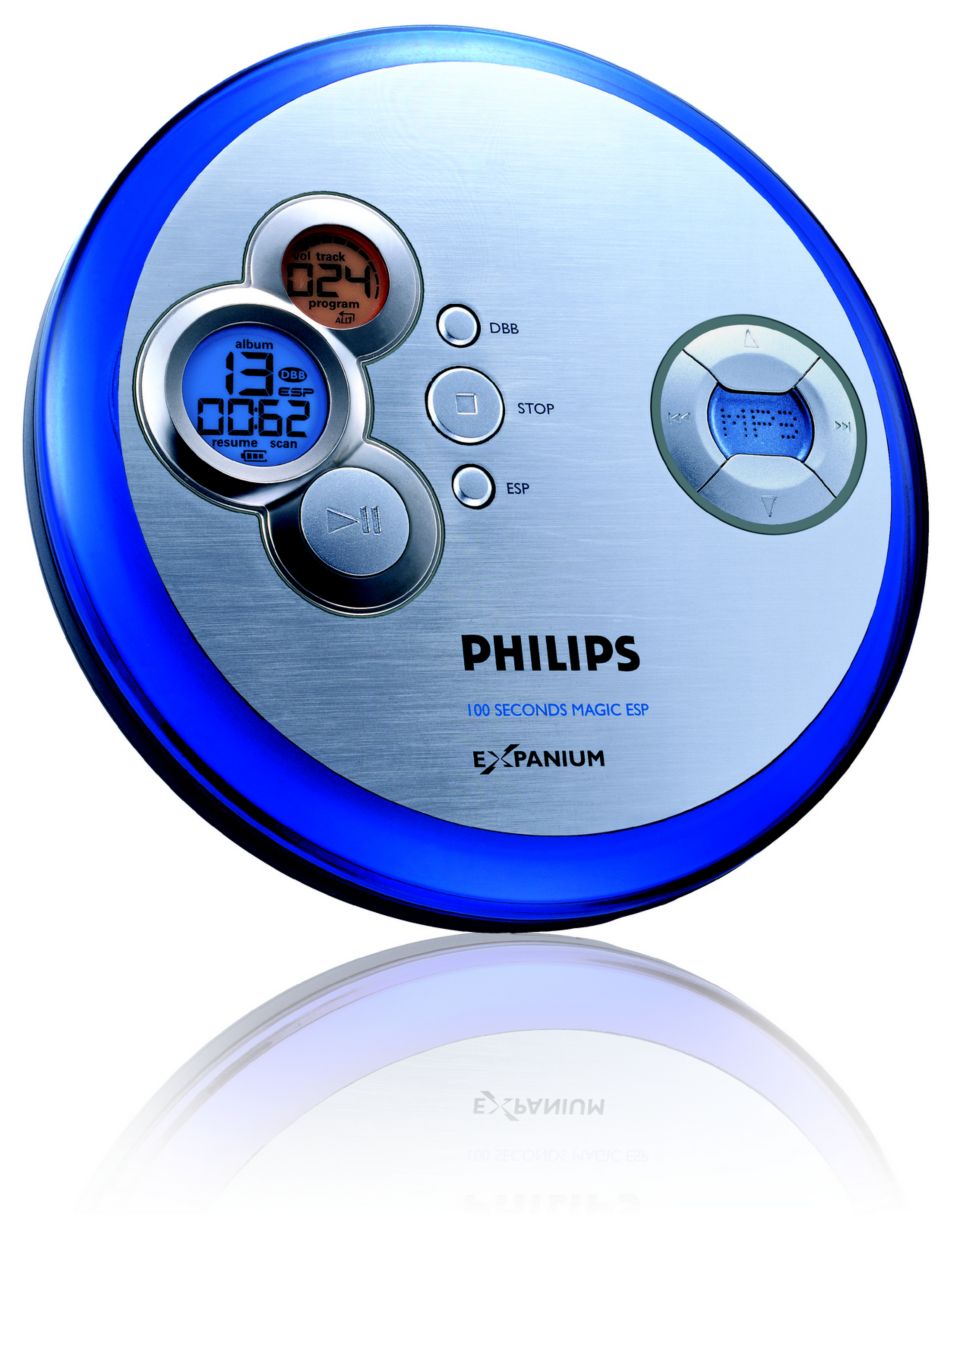 Mos voorzien Gecomprimeerd Draagbare MP3-CD-speler EXP2465/00 | Philips